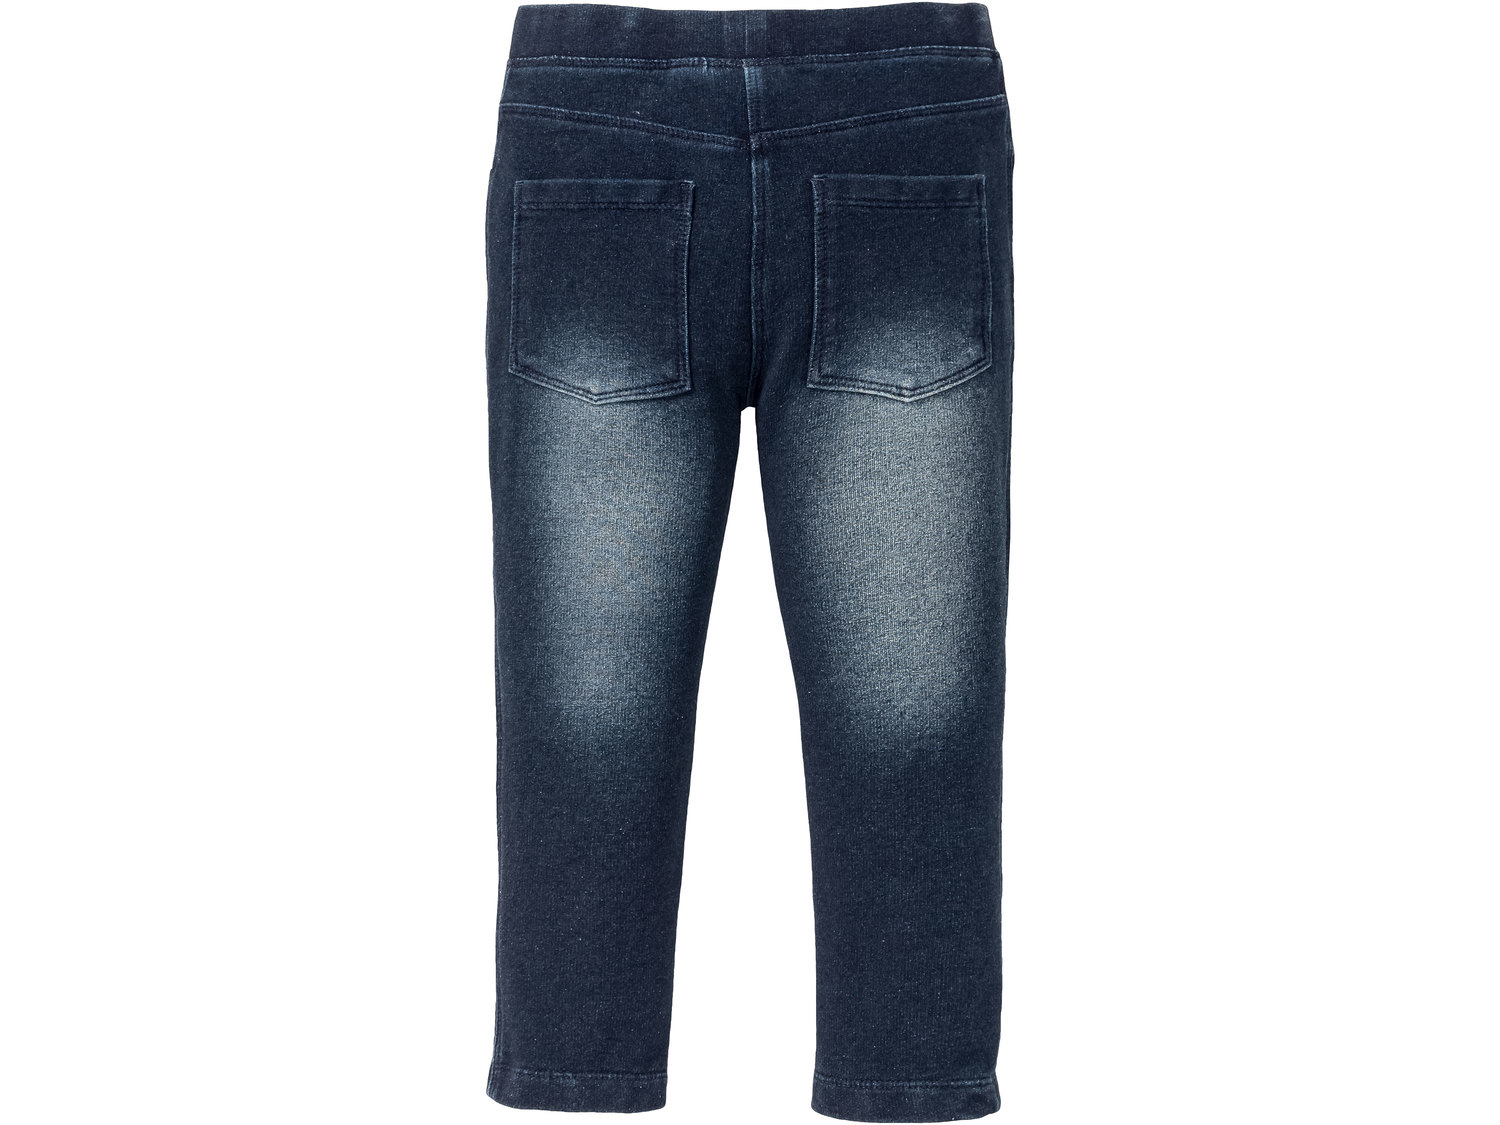 Jegginsy dziewczęce Lupilu, cena 19,99 PLN 
- wygląd jeans&oacute;w, wygoda ...